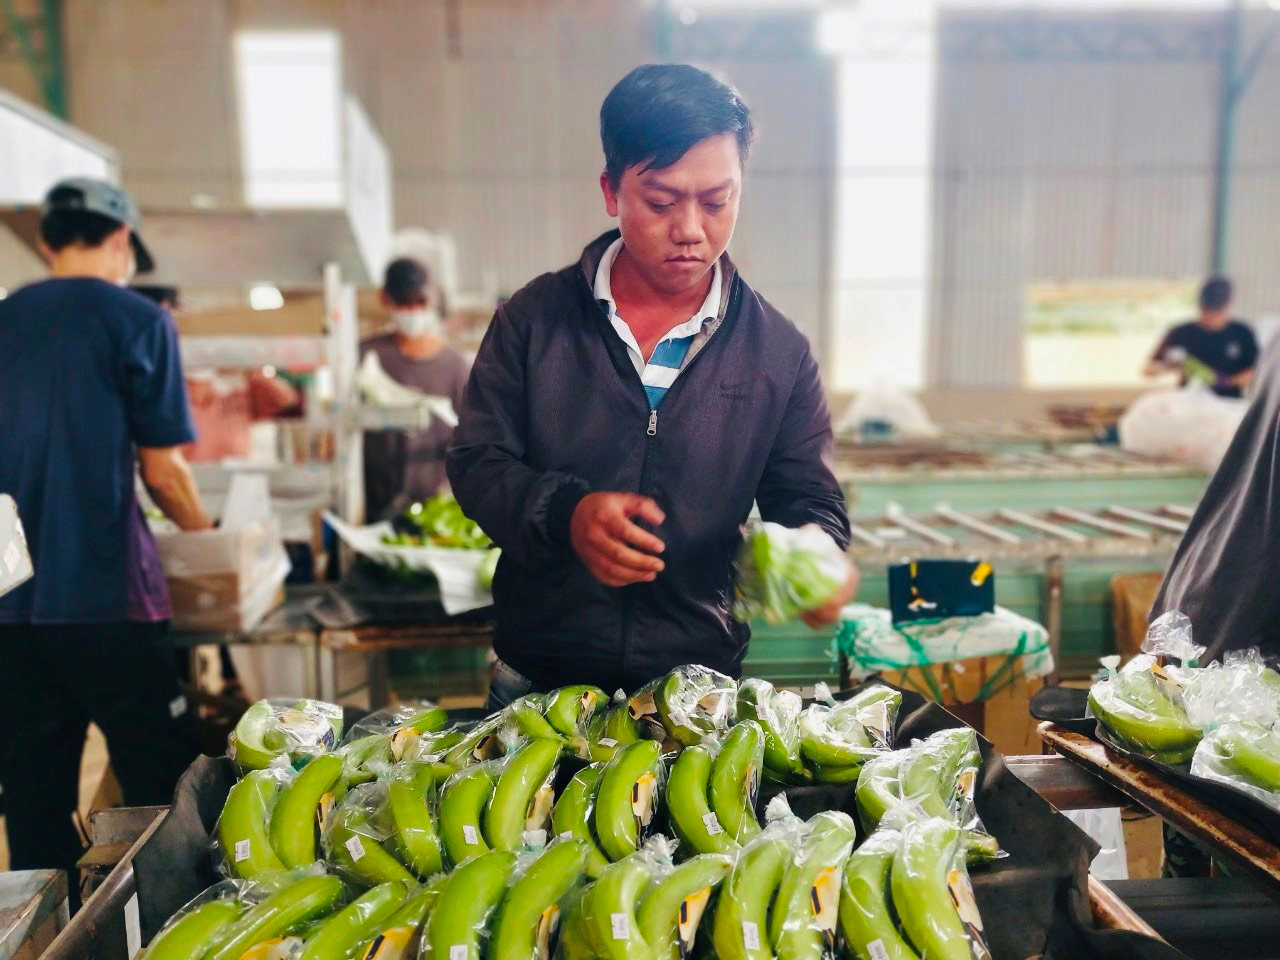 Hoàng Anh Gia Lai chi thưởng 600-800 triệu đồng cho nhân viên theo chế độ đãi ngộ mới, xây dựng thương hiệu riêng Pleiku Sweet cho chuối - Ảnh 3.